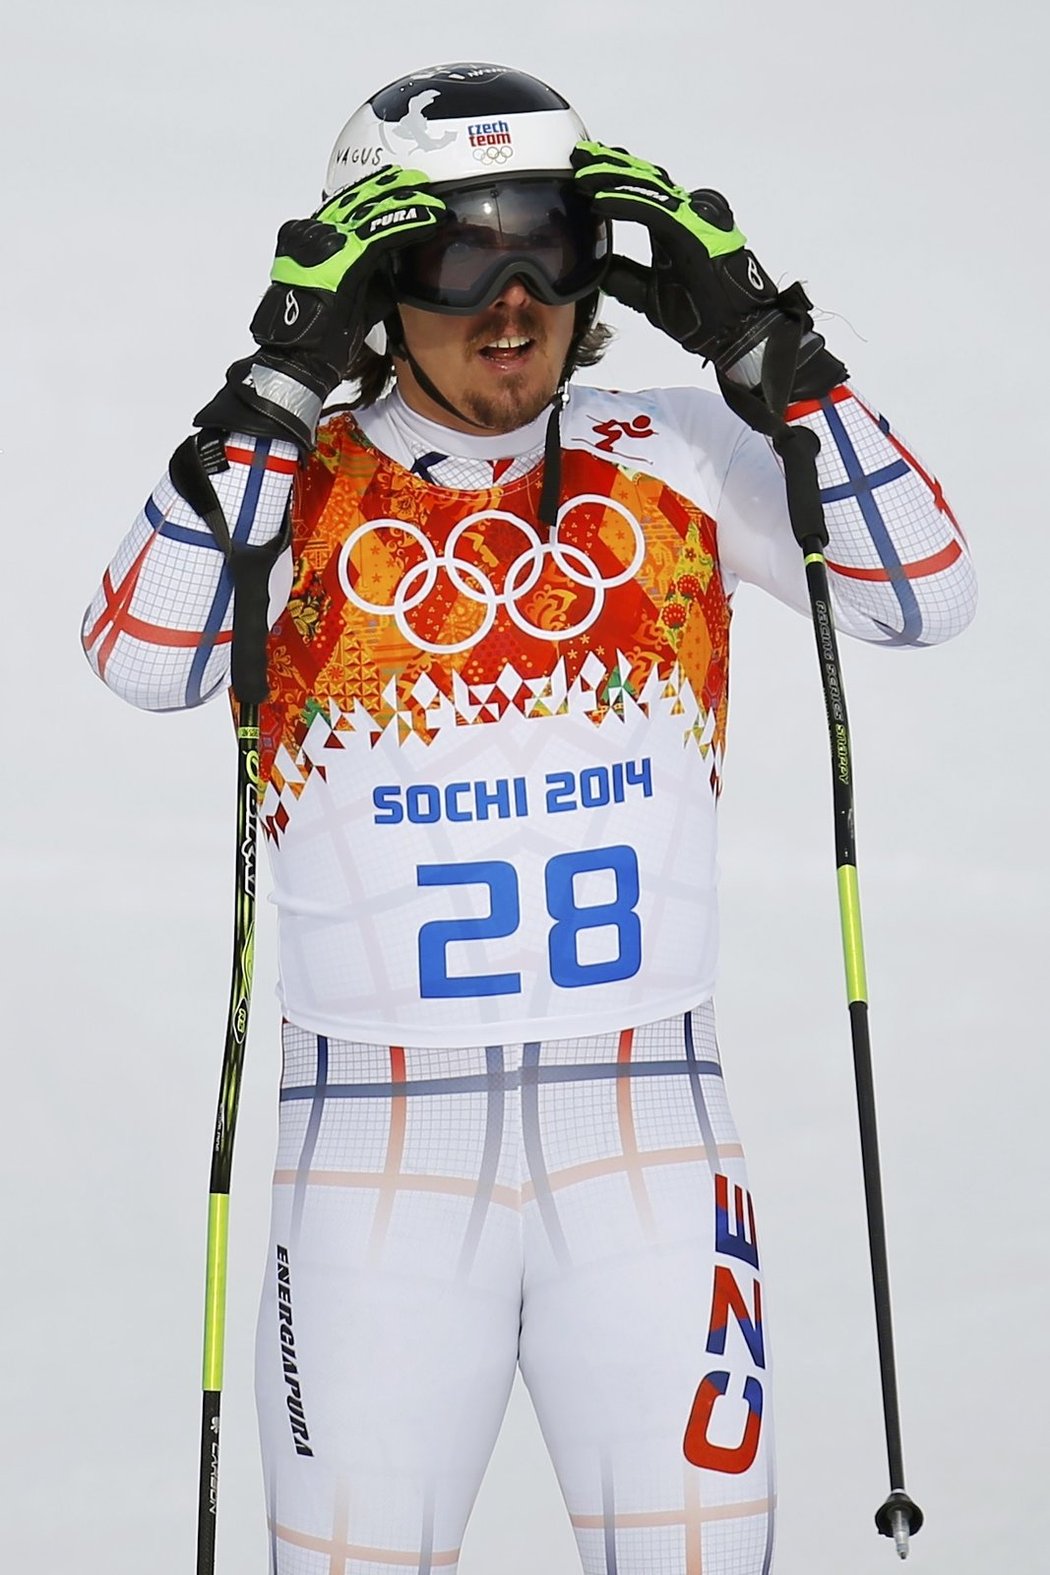 Ondřej Bank v prvním kole obřího slalomu vyhlásil útok na medaili, když zajel druhý nejrychlejší čas